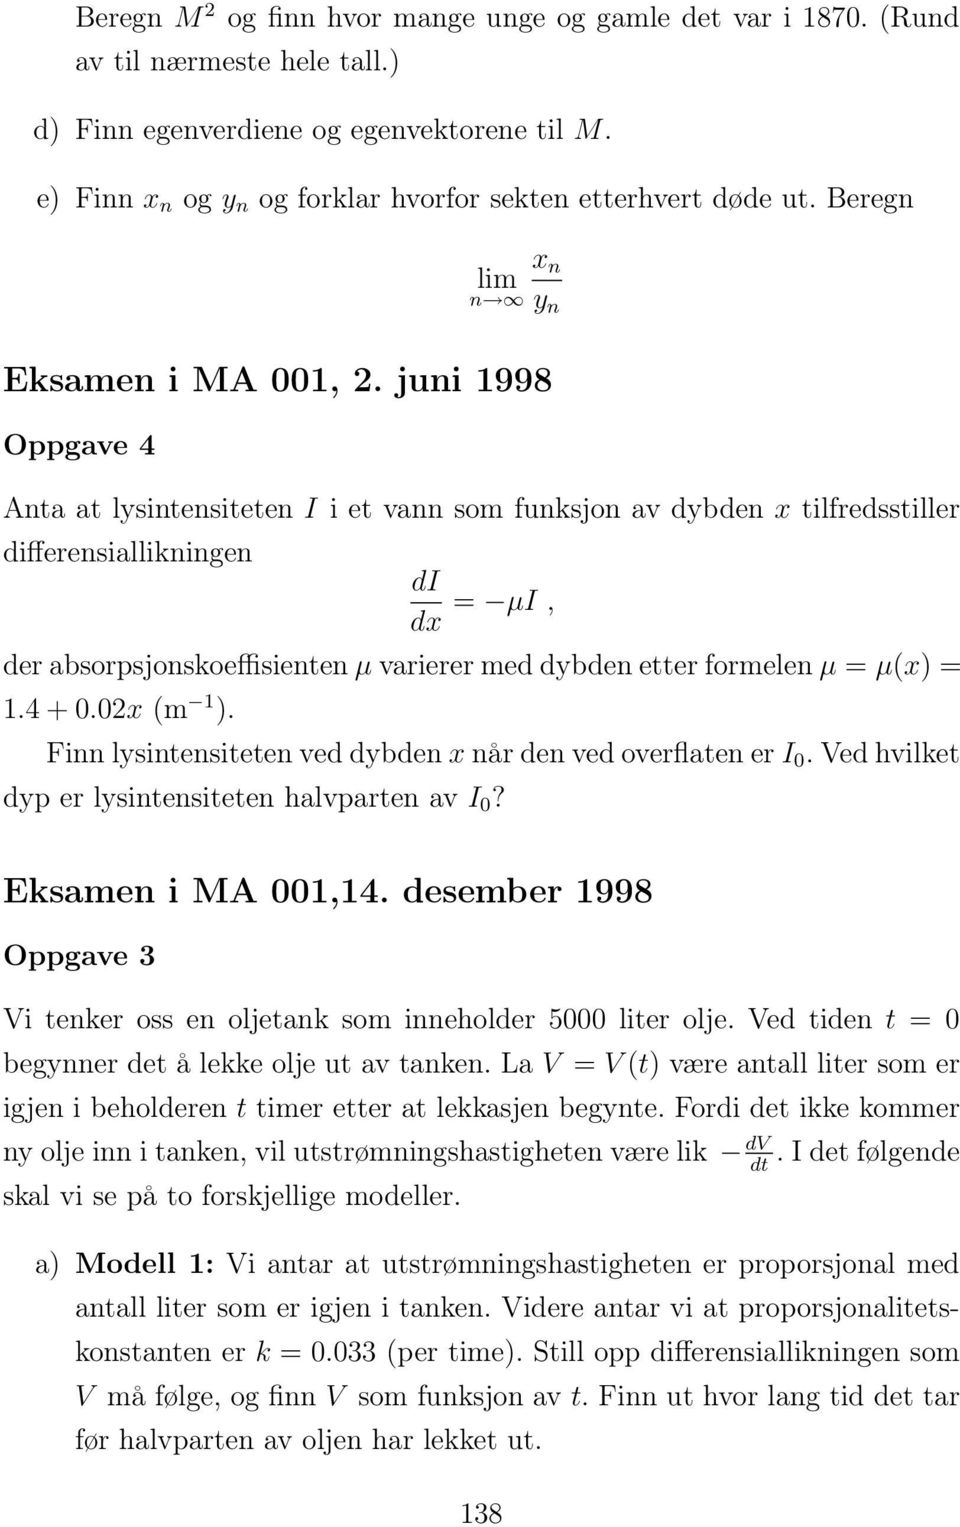 juni 1998 Anta at lysintensiteten I i et vann som funksjon av dybden x tilfredsstiller differensiallikningen di dx = µi, der absorpsjonskoeffisienten µ varierer med dybden etter formelen µ = µ(x) = 1.